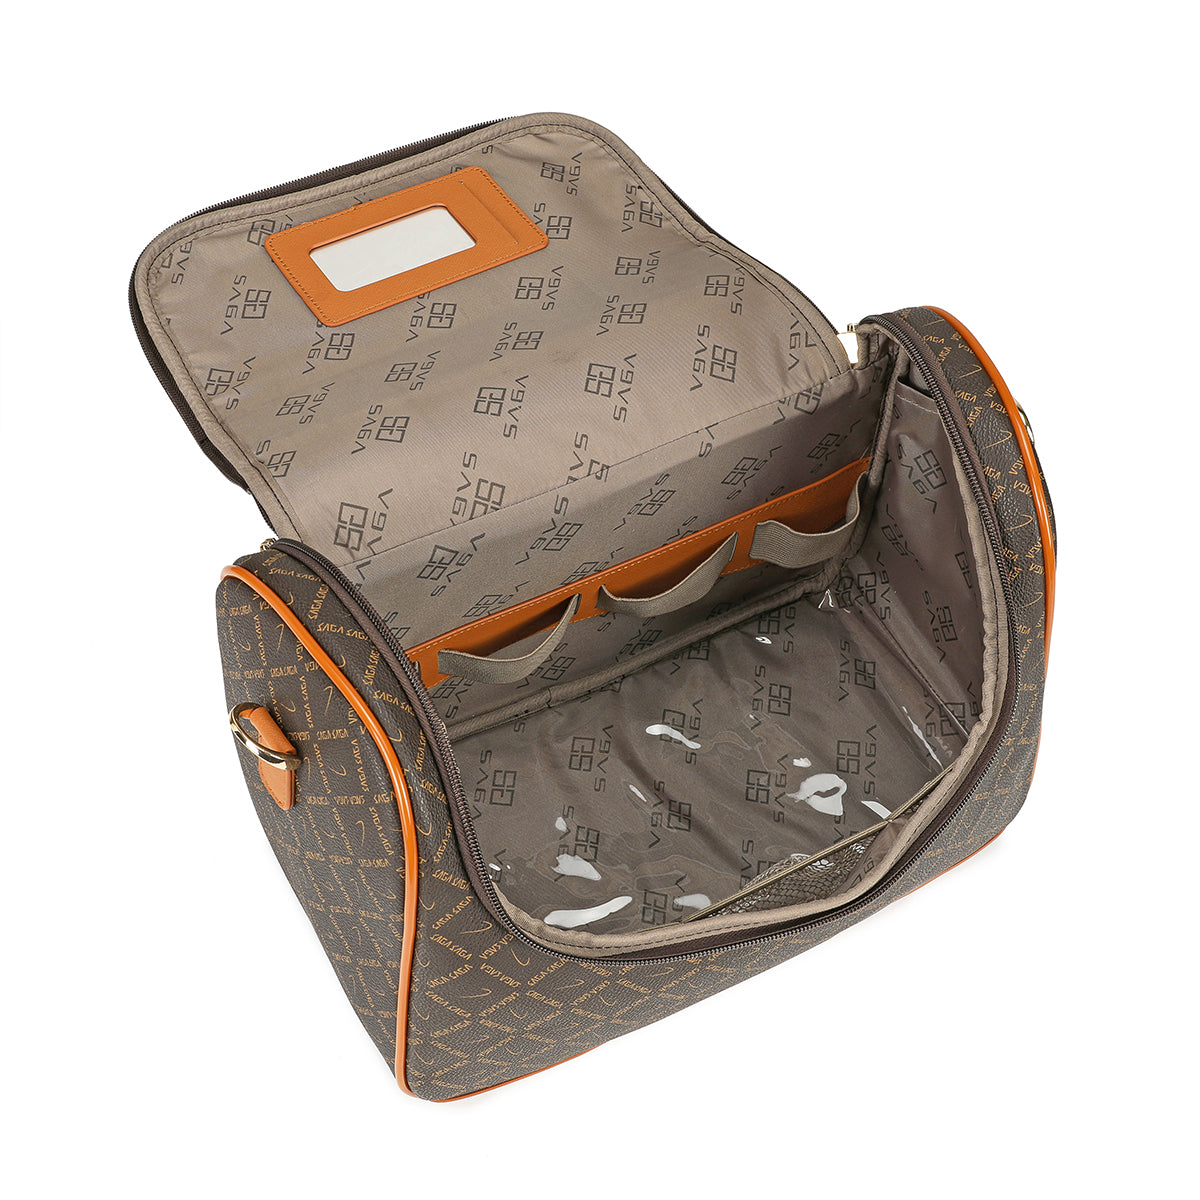 Travel bag 13 inch with shoulder strap, brown color